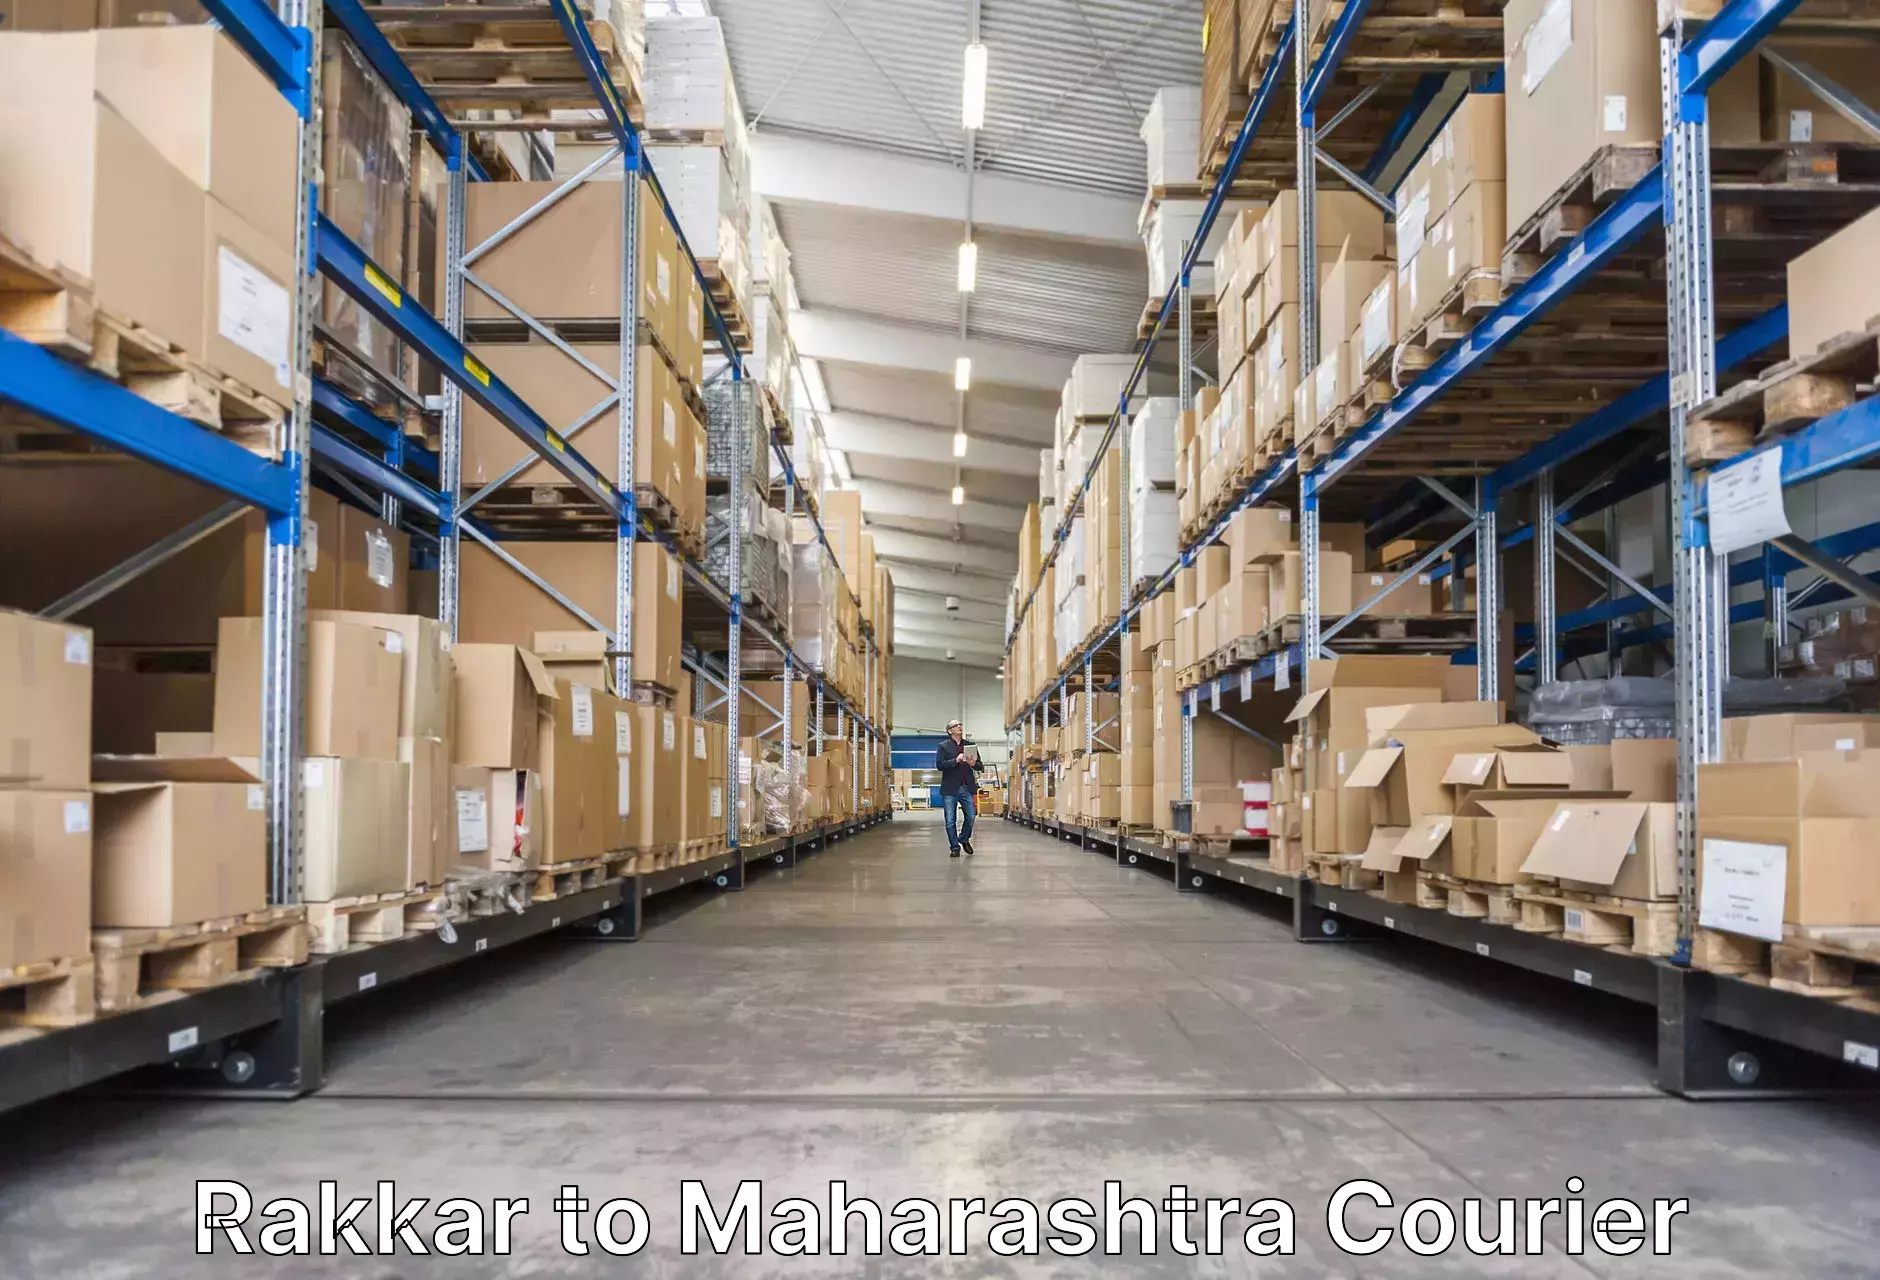 Luggage shipping service Rakkar to Maharashtra